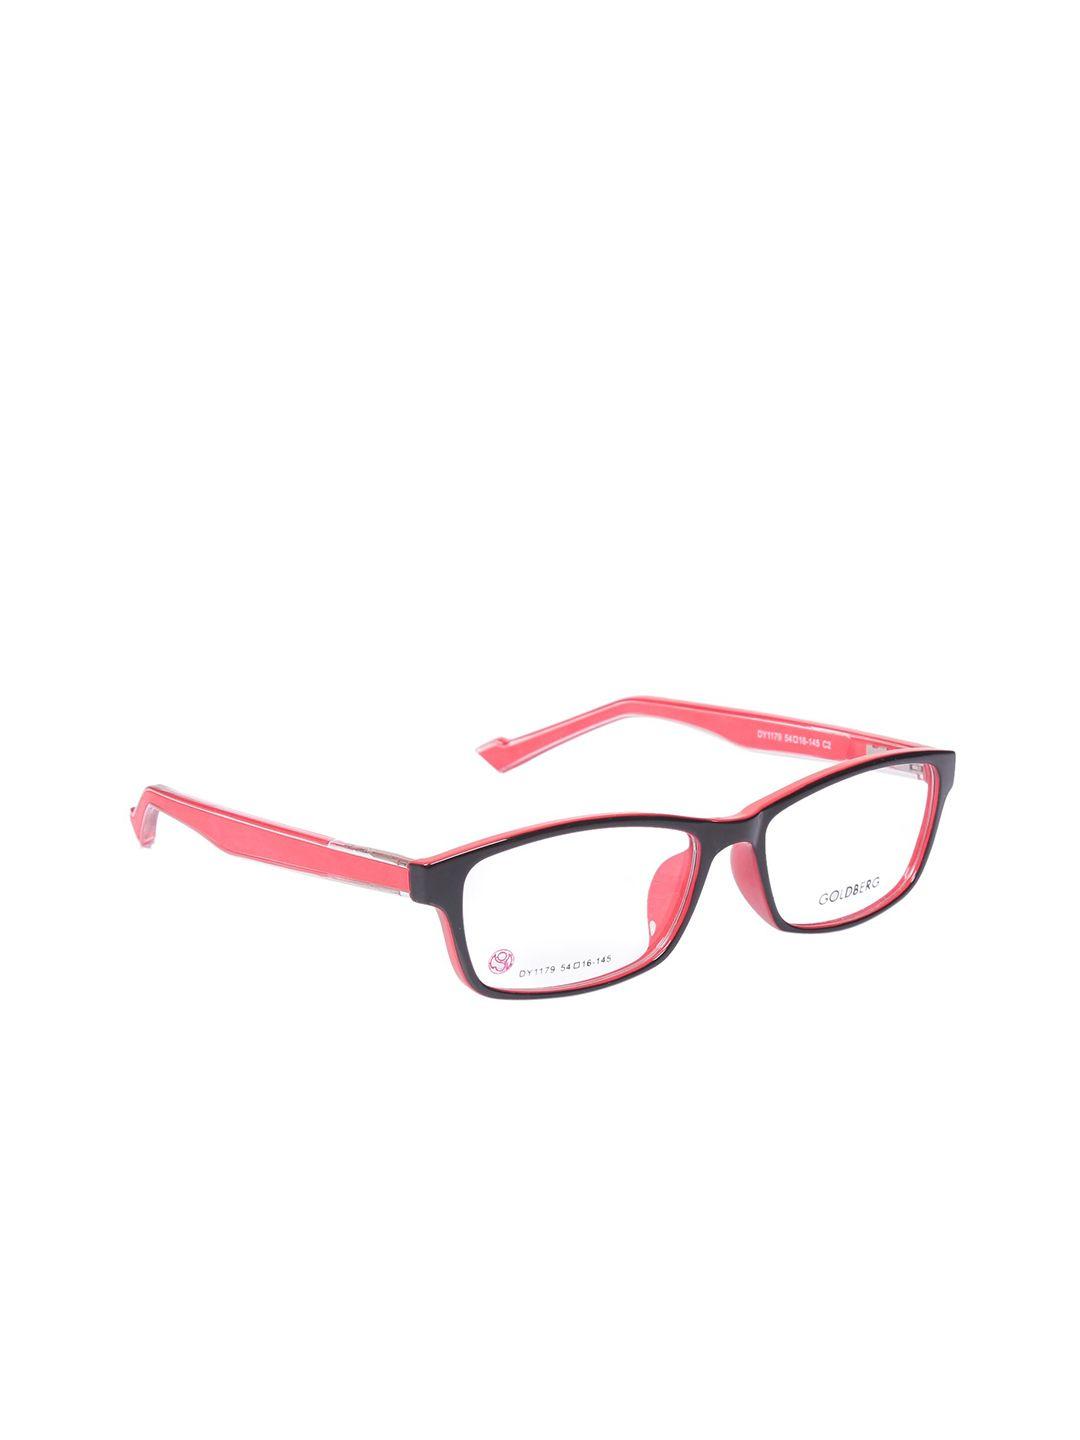 gold berg unisex black & pink full rim wayfarer frames eyeglasses